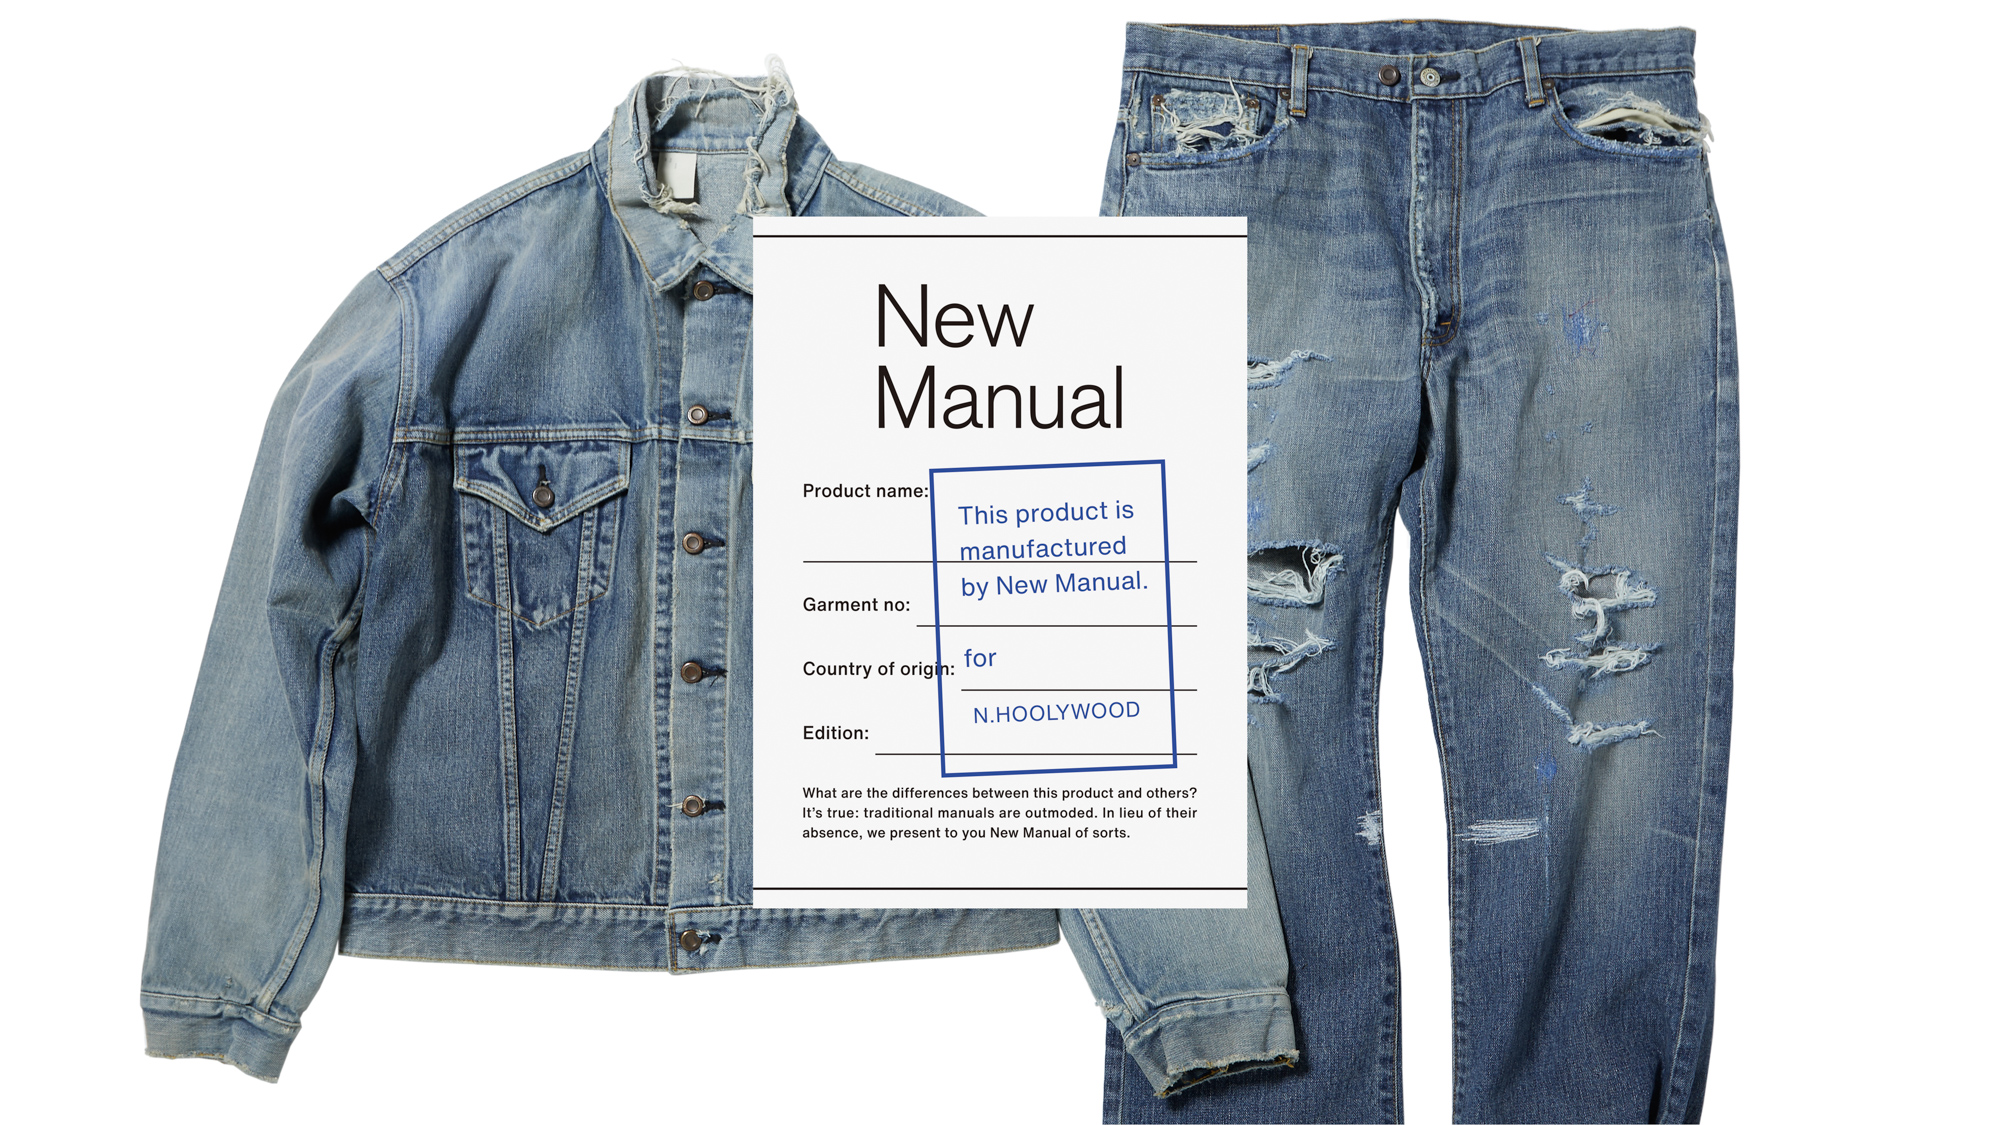 ヴィンテージアイテムを捉え直す新ブランド「New Manual」がデビュー